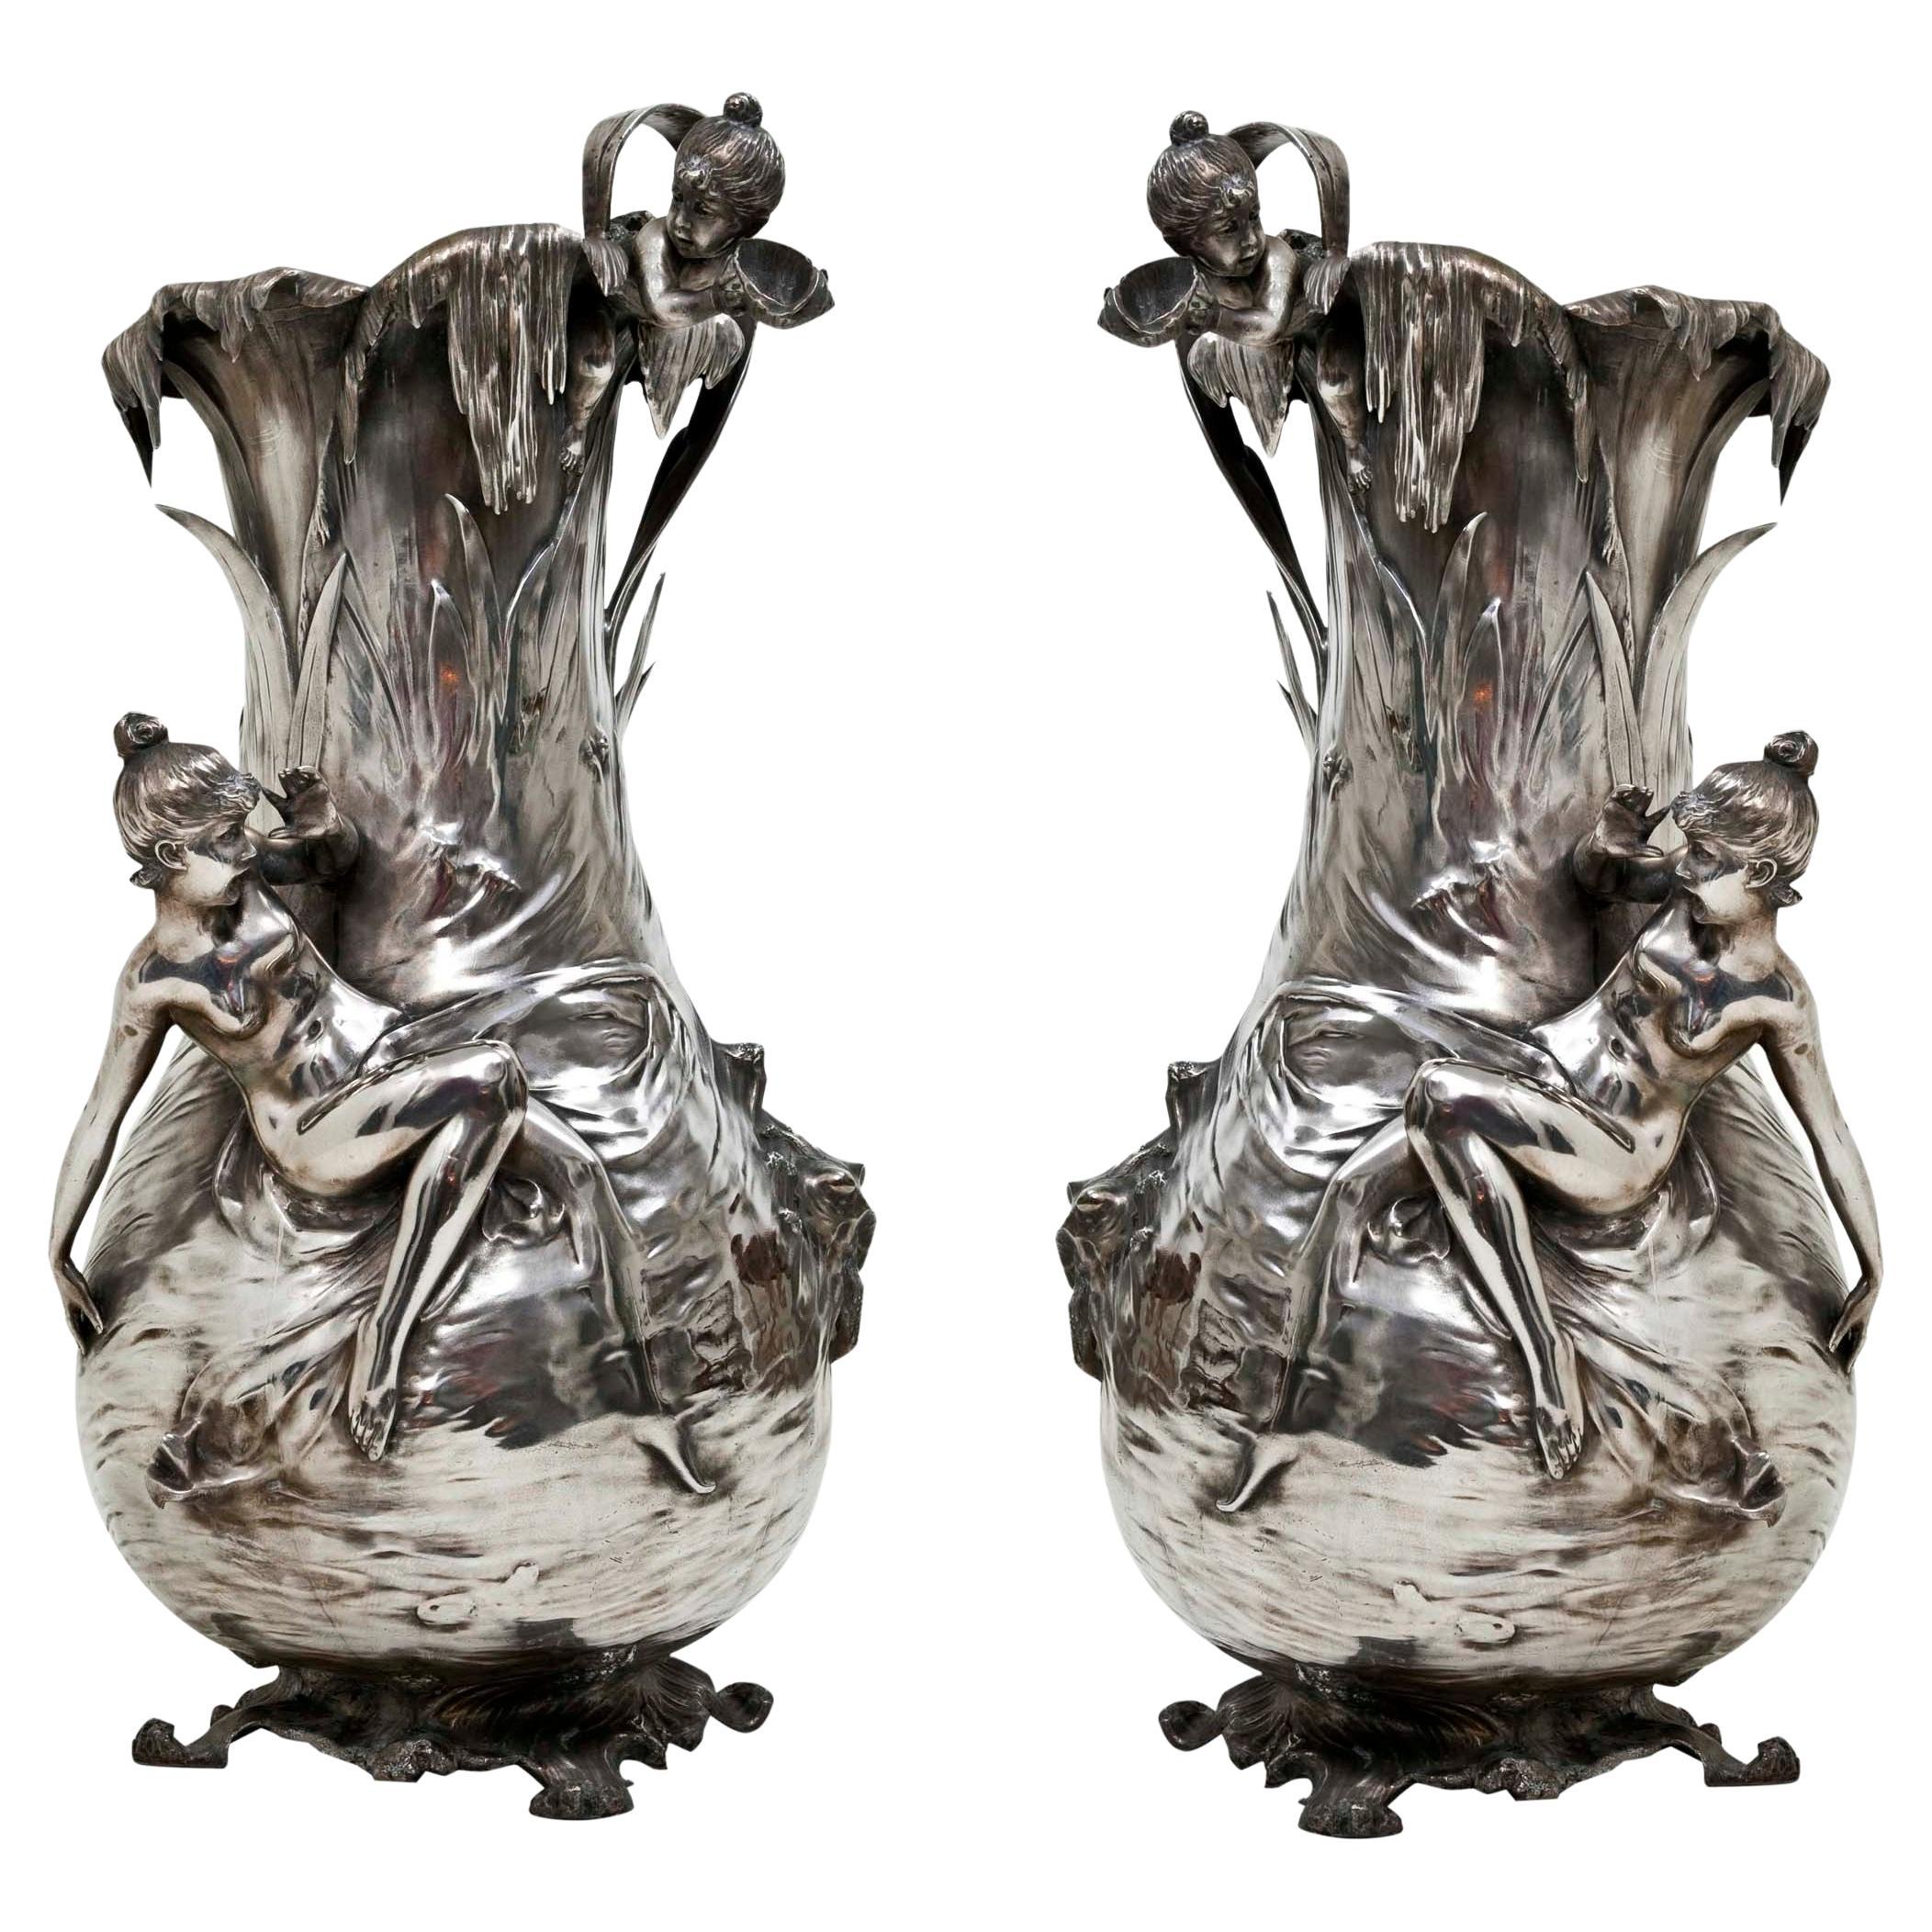 Paar große Vasen, Wmf, Deutsch, 1910, versilbert, Jugendstil, Jugendstil